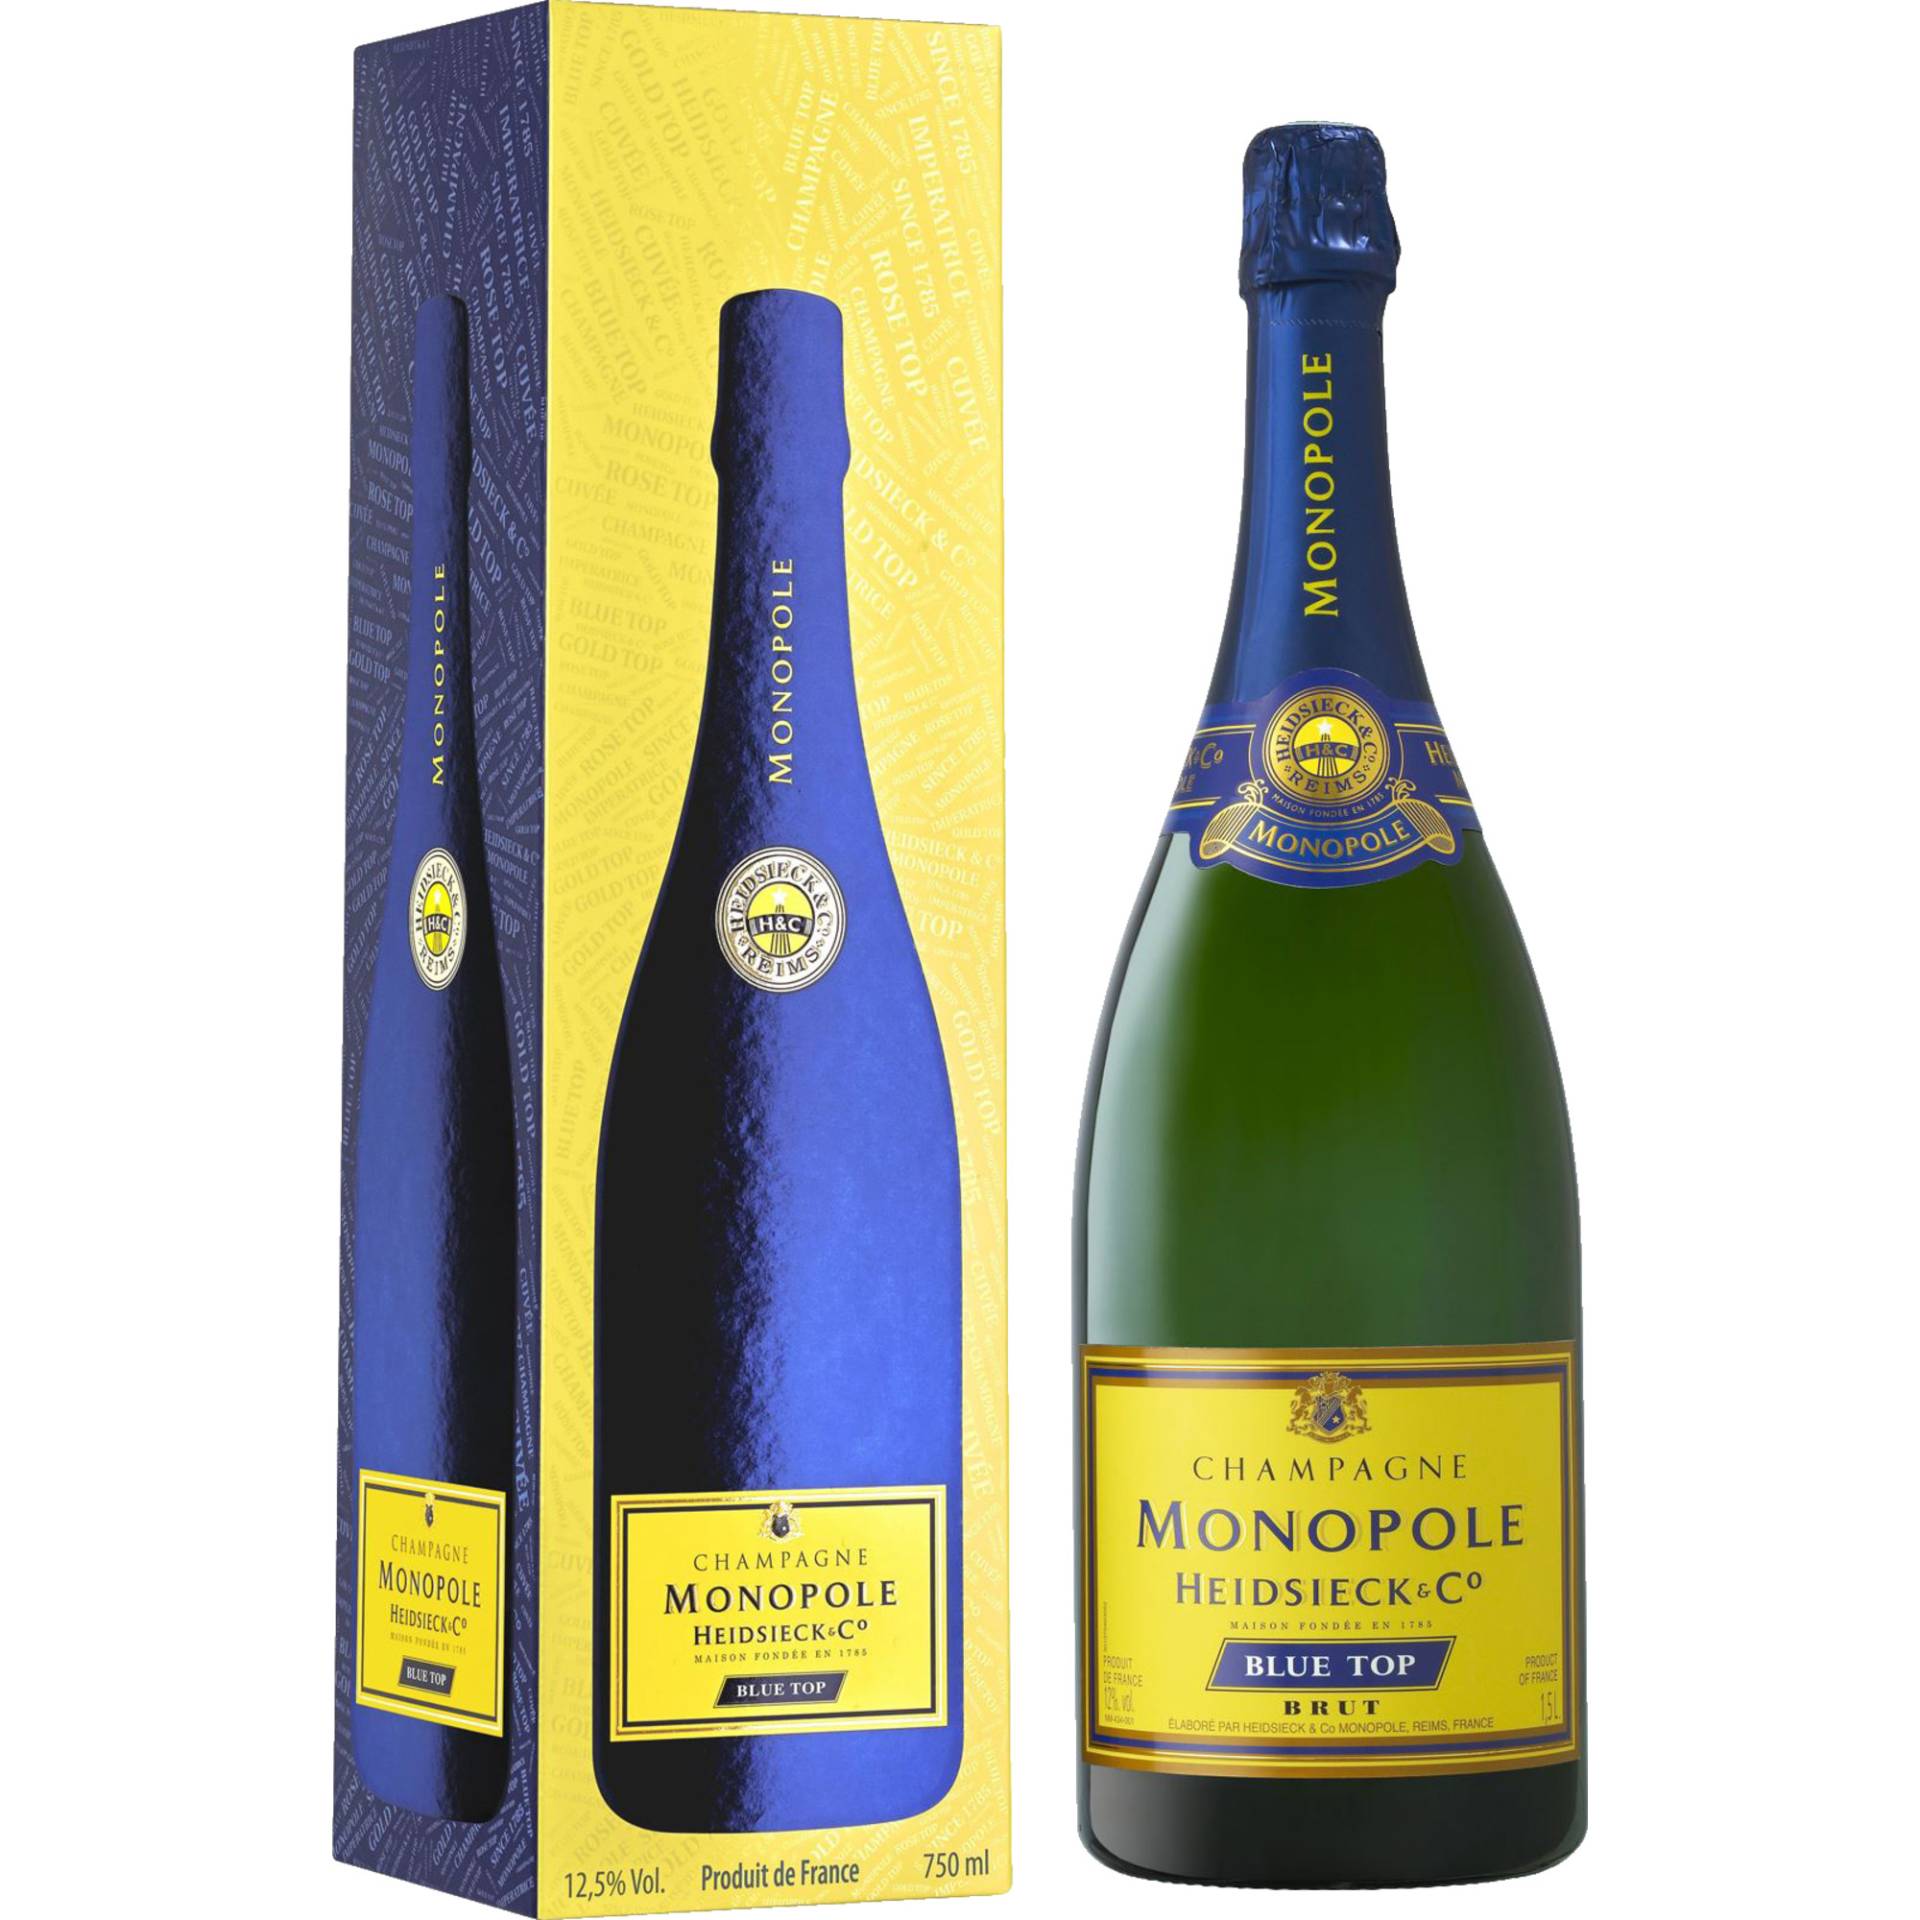 Champagne Heidsieck Monopole Blue Top, Brut, Champagne AC, Geschenketui, Magnum, Champagne, Schaumwein von Heidsieck Monopole & Co., 51100 Reims, France